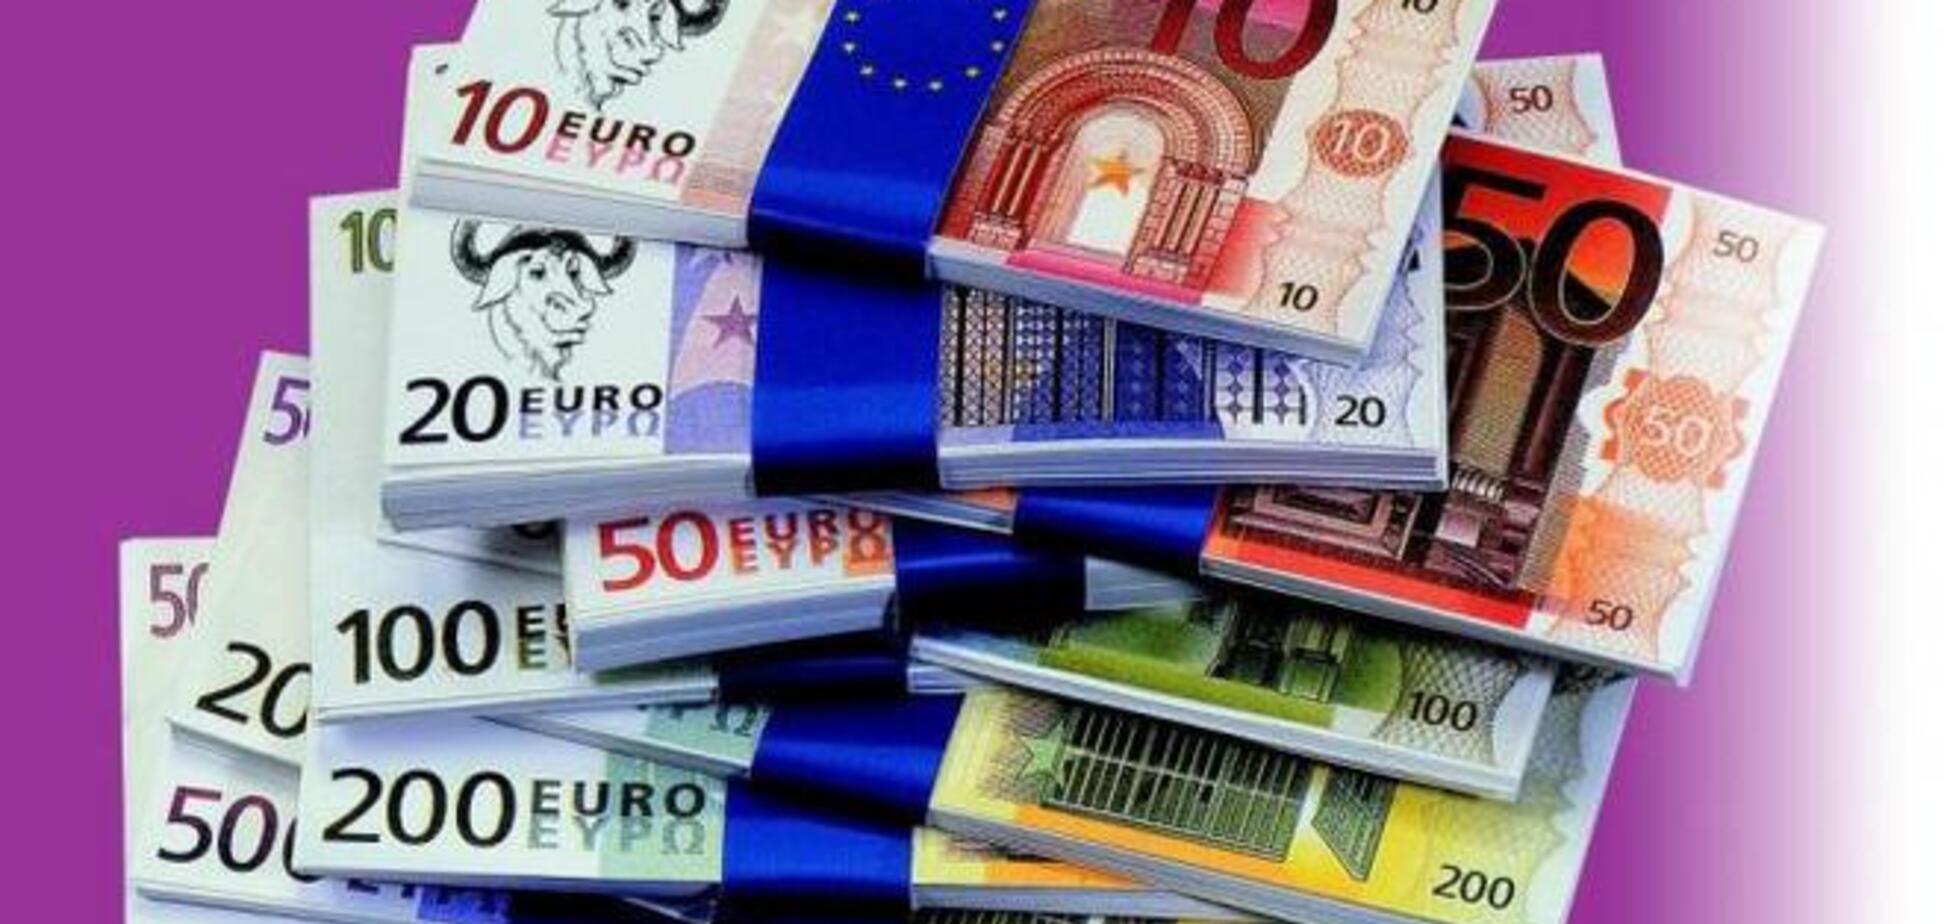 Евро впервые в истории России взлетел до 54 рублей